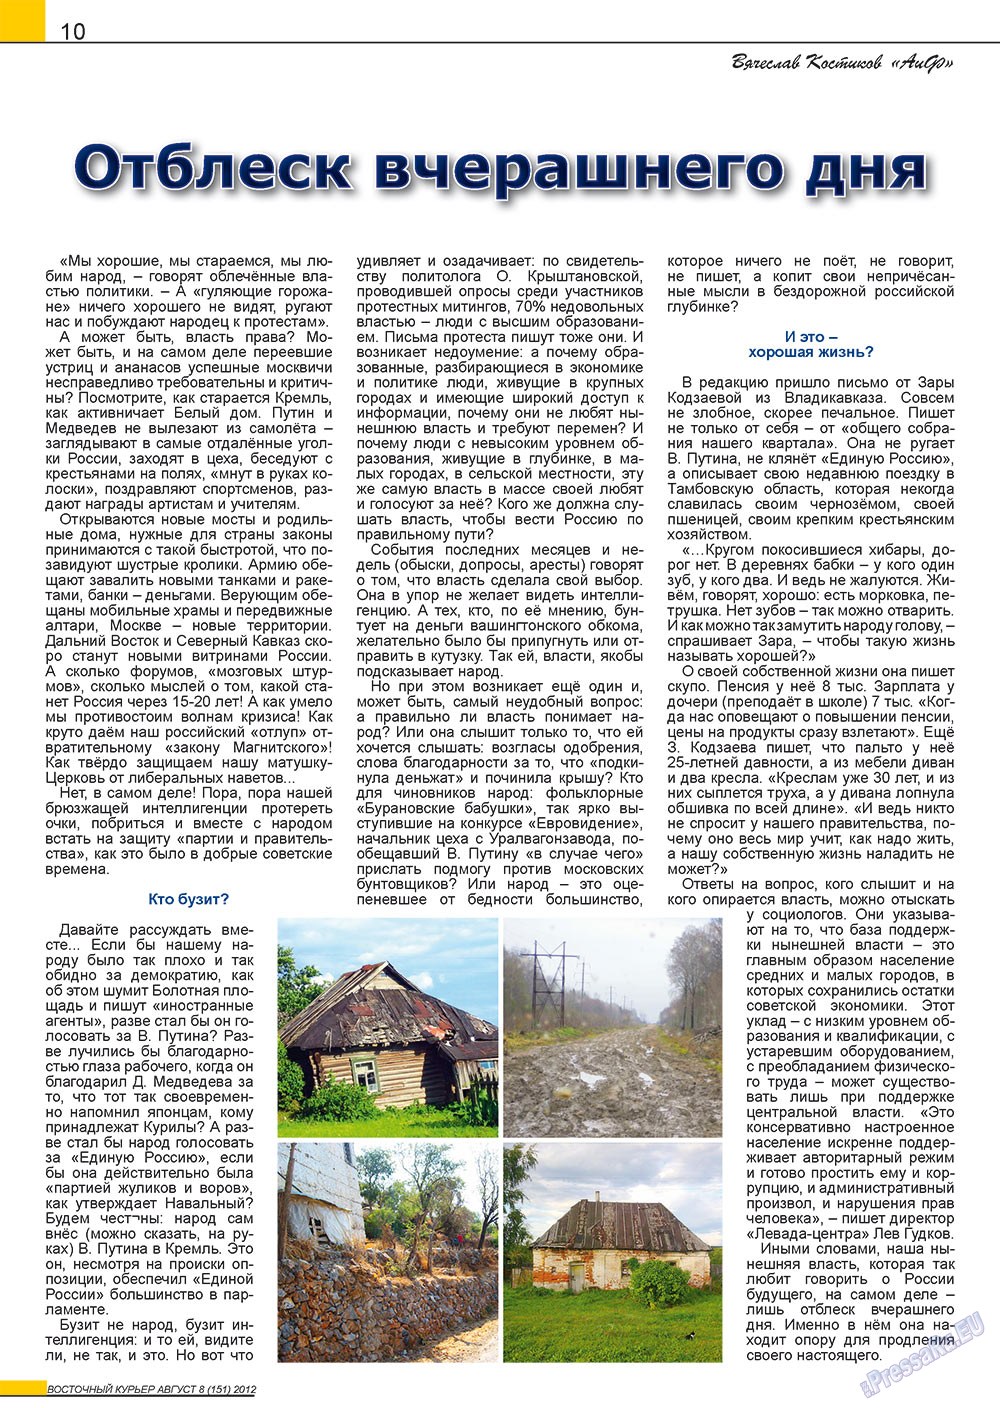 Восточный курьер (журнал). 2012 год, номер 8, стр. 10